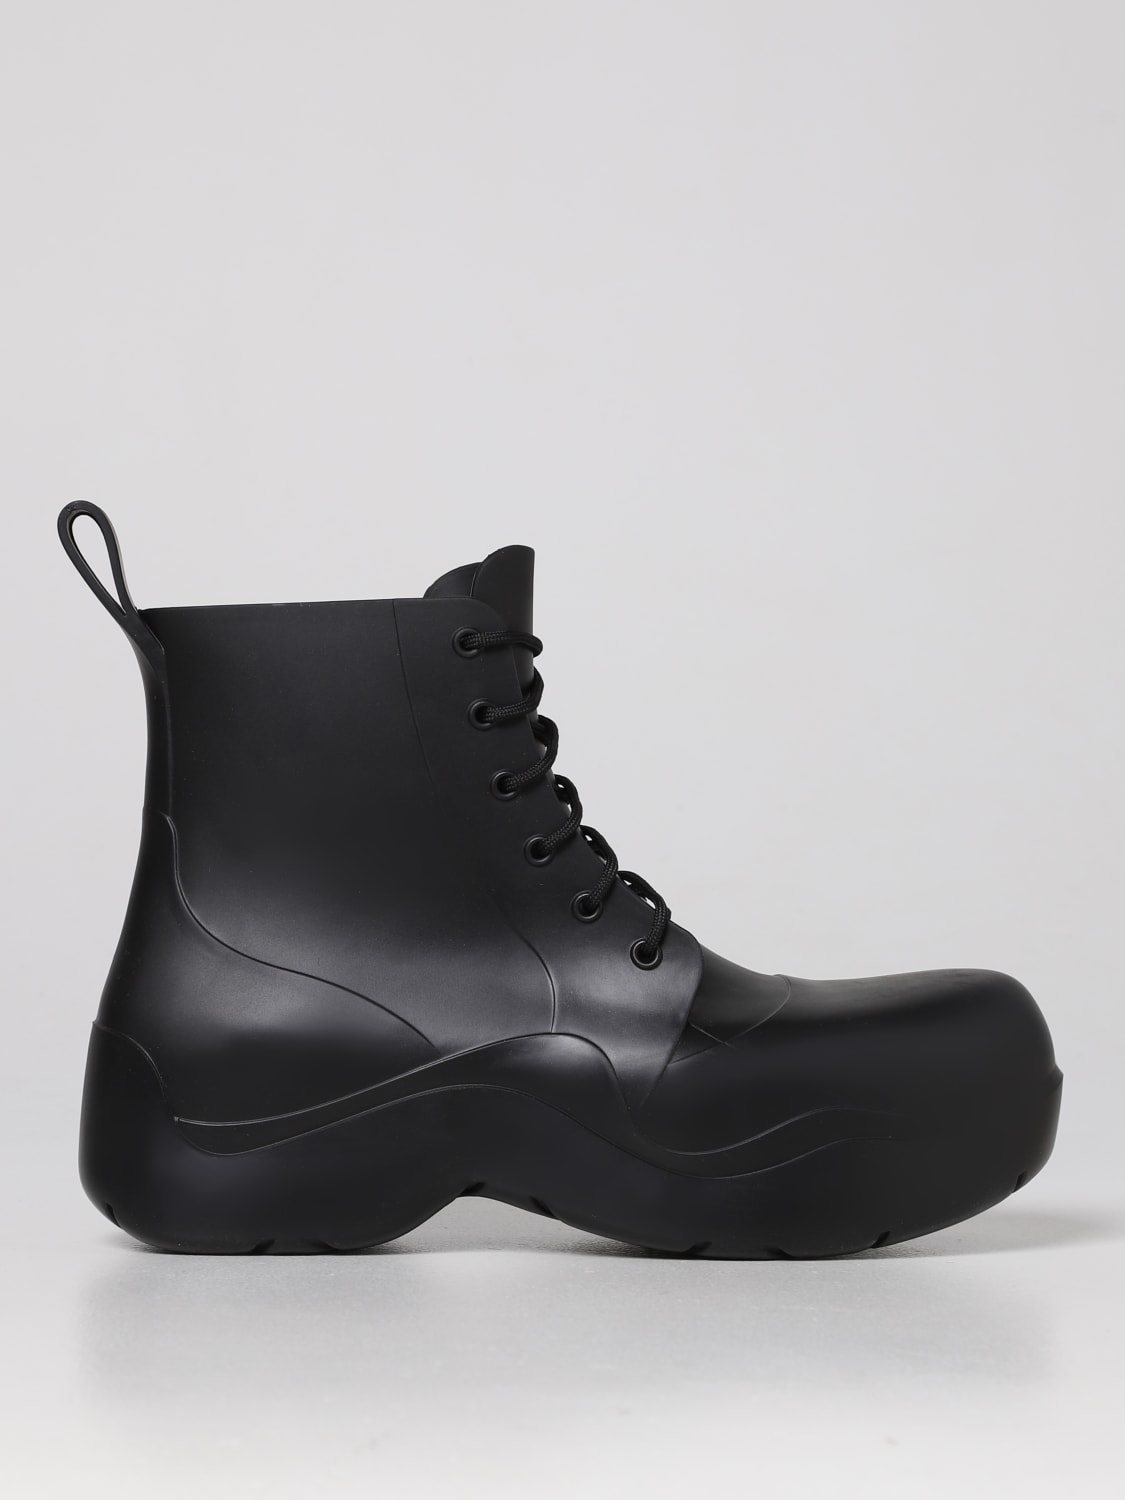 ボッテガヴェネタ　メンズブーツ黒革靴　41 1/2 25.5cm〜26.0cmファッション